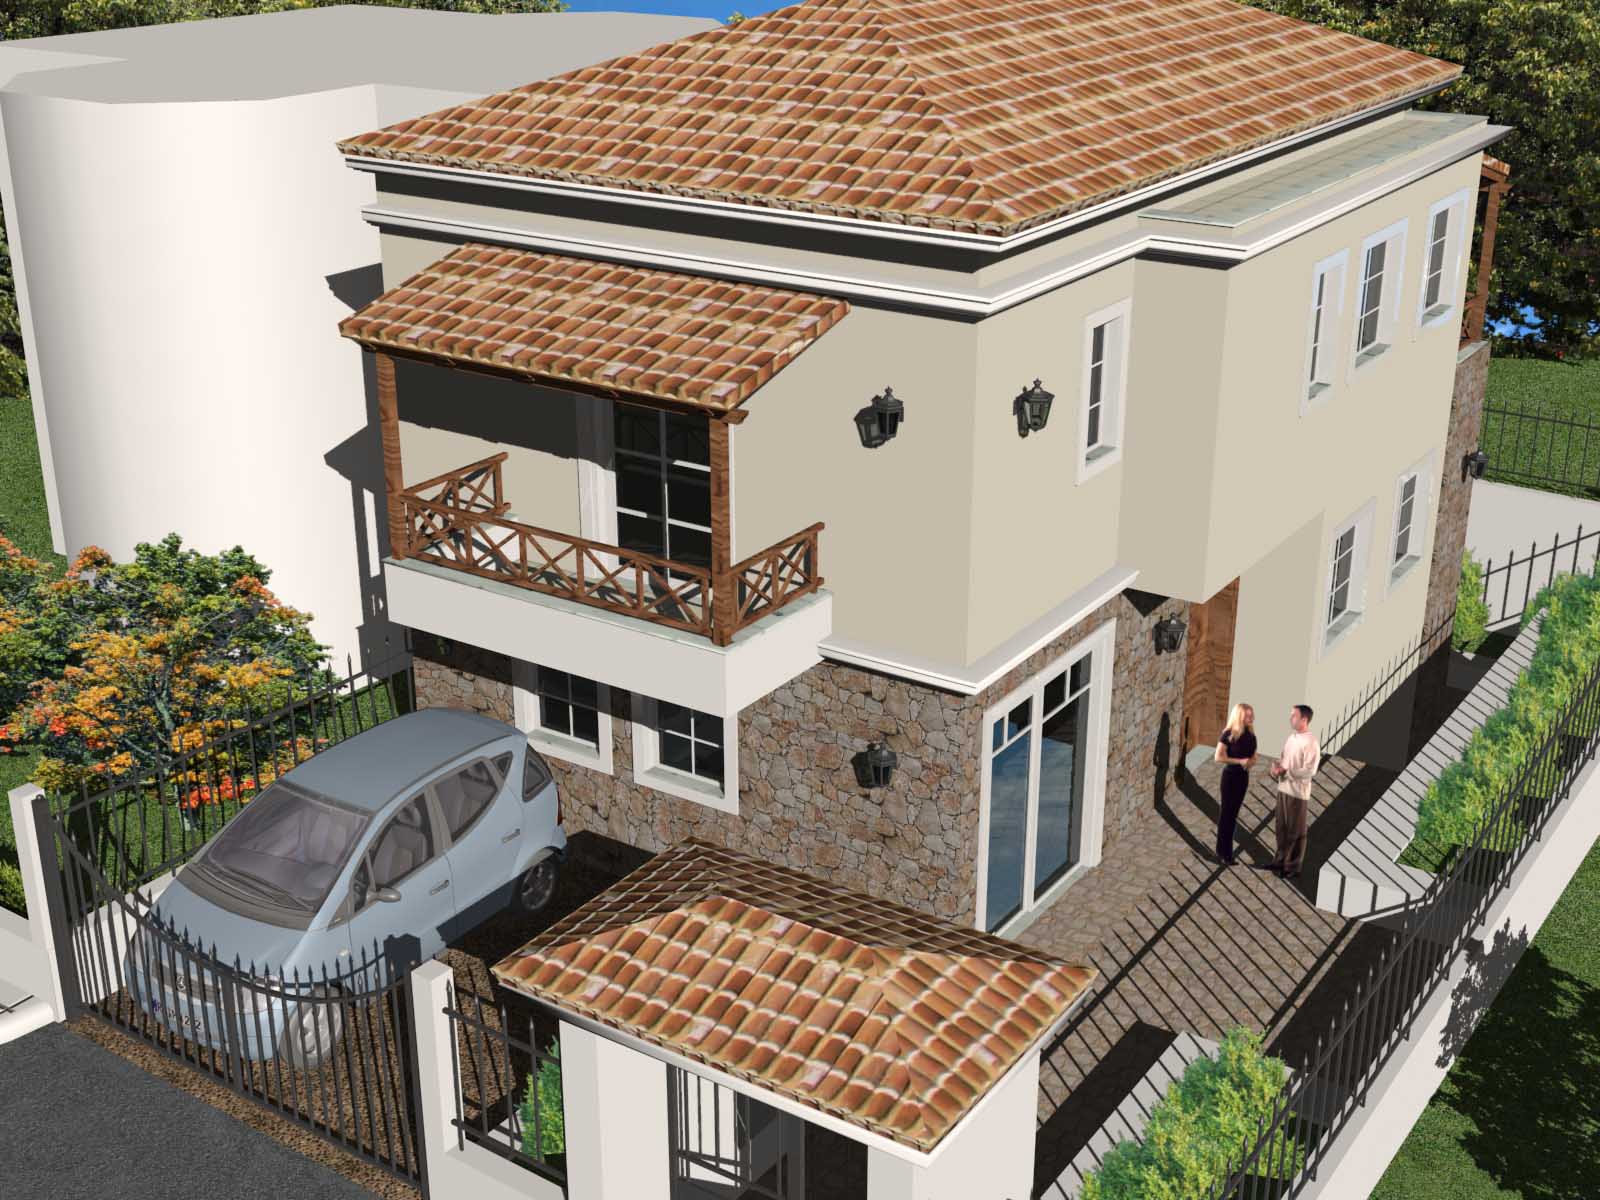 K1 Διώροφη μονοκατοικία σύμμεικτη μεταλλική κατασκευή ολοκληρωμένη κατασκευή απο 750 € / μ2